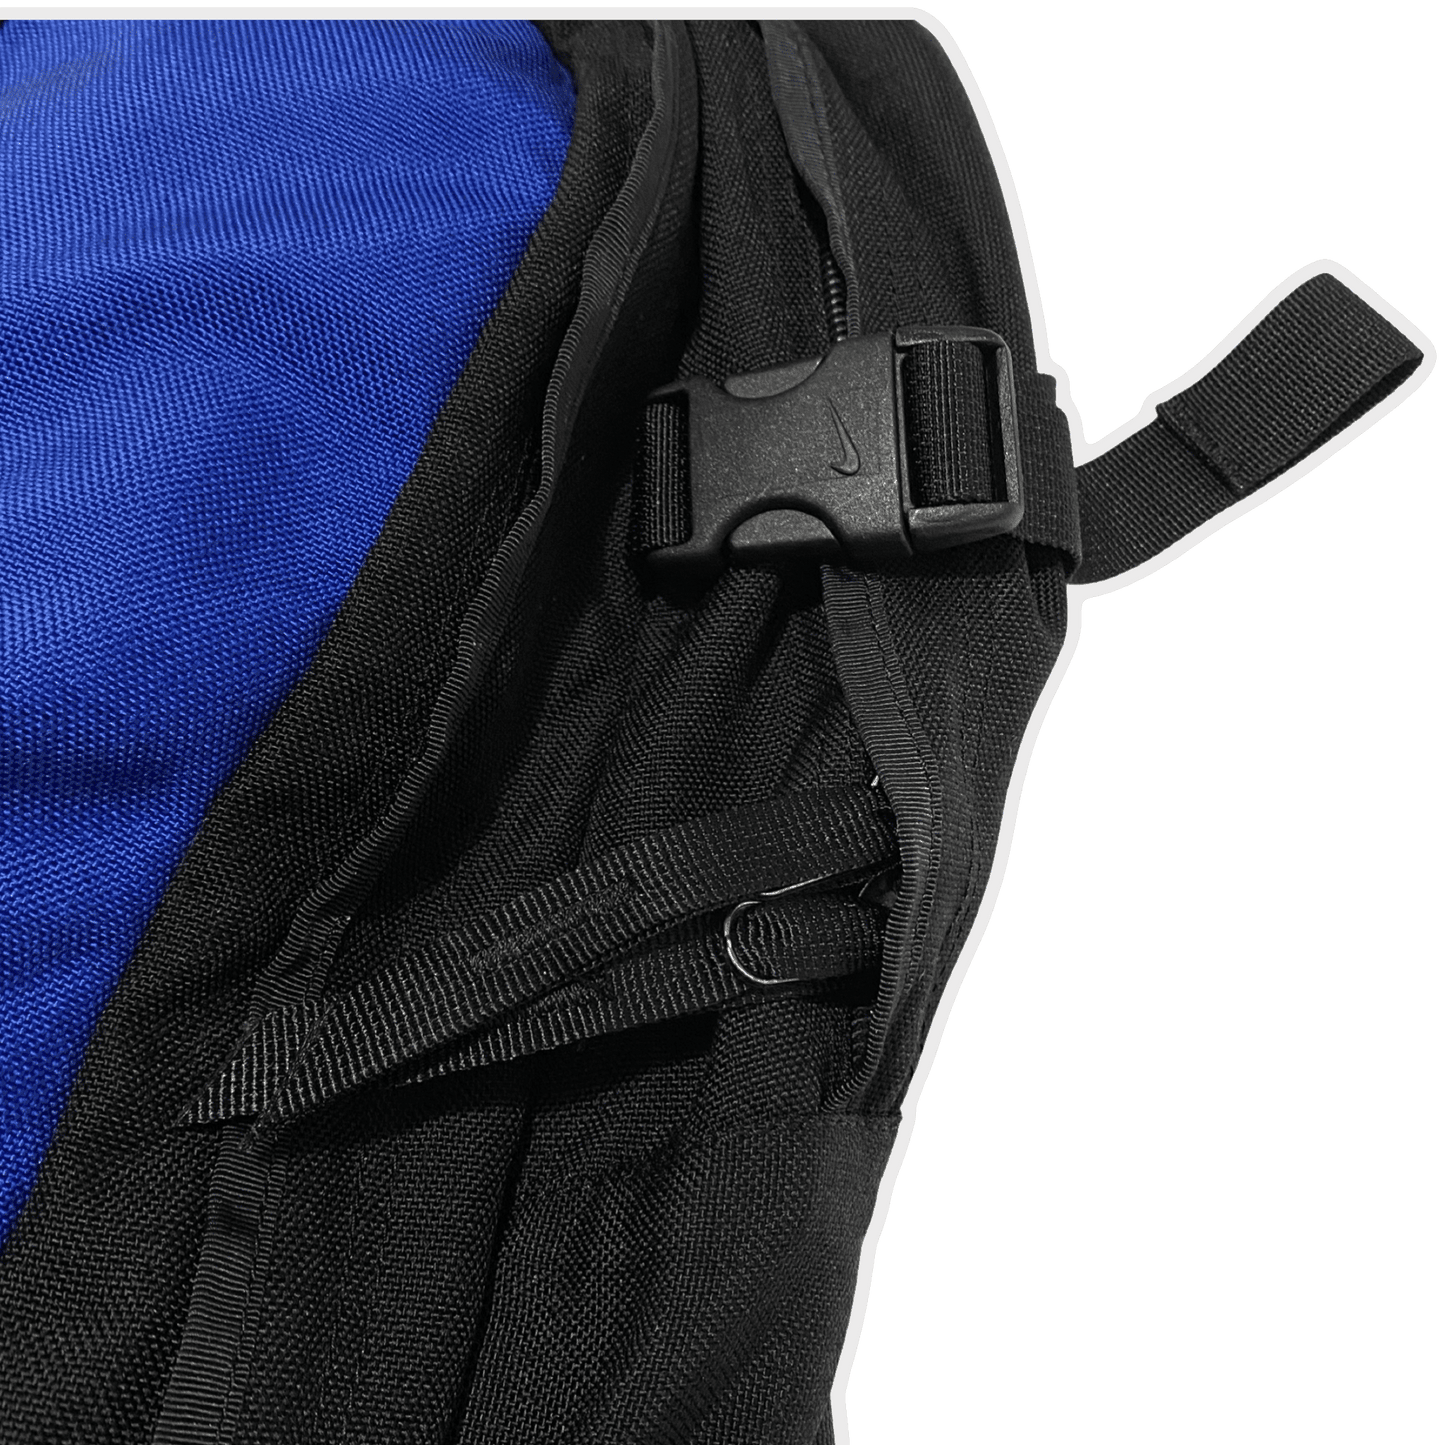 Nike ACG '97 Karst 40 Backpack